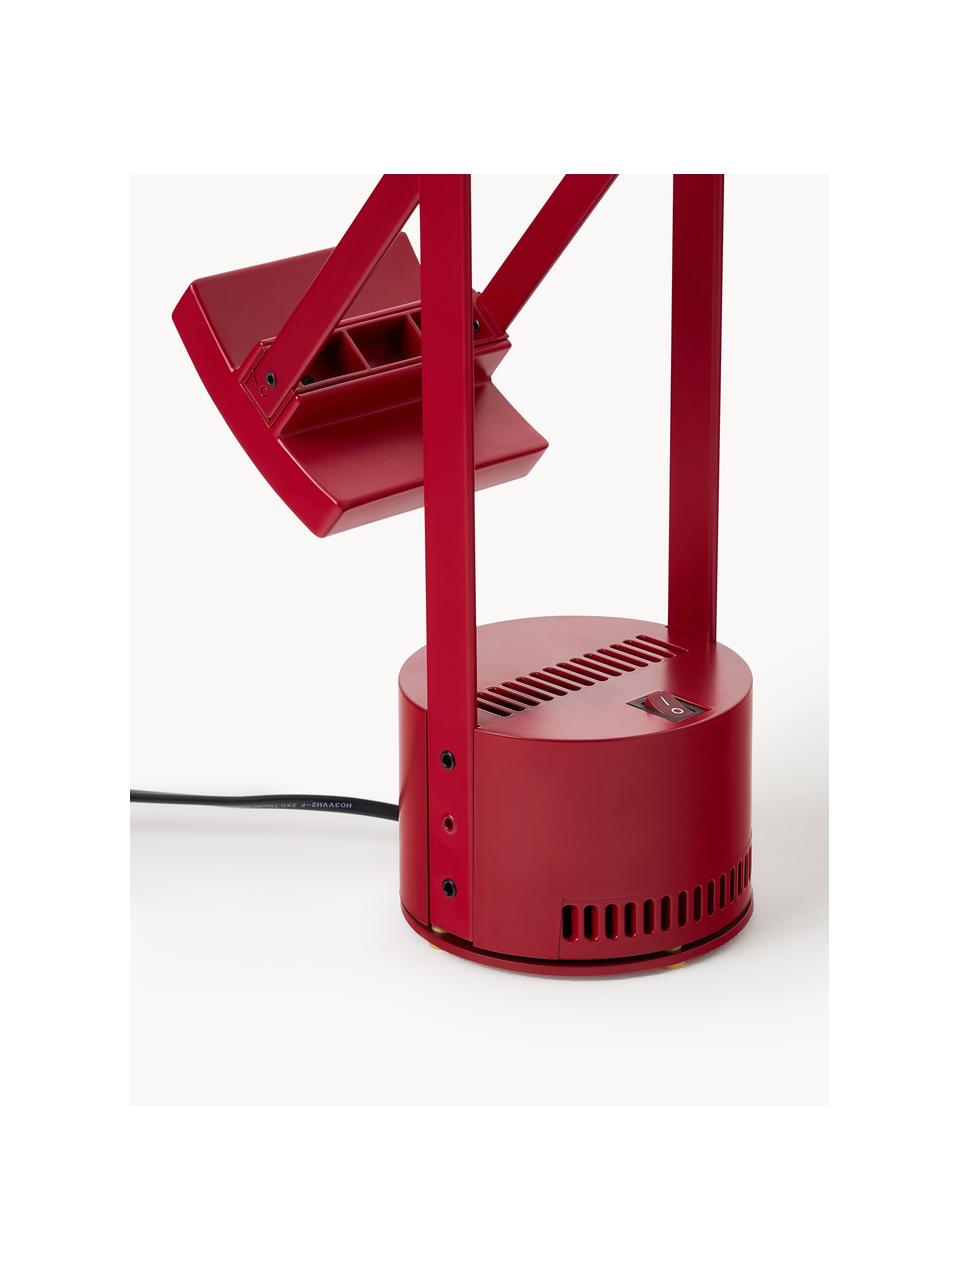 Tischlampe Tizio, Lampenschirm: Technopolymer, Gestell: Aluminium, beschichtet, Rot, B 78 x H 66 cm